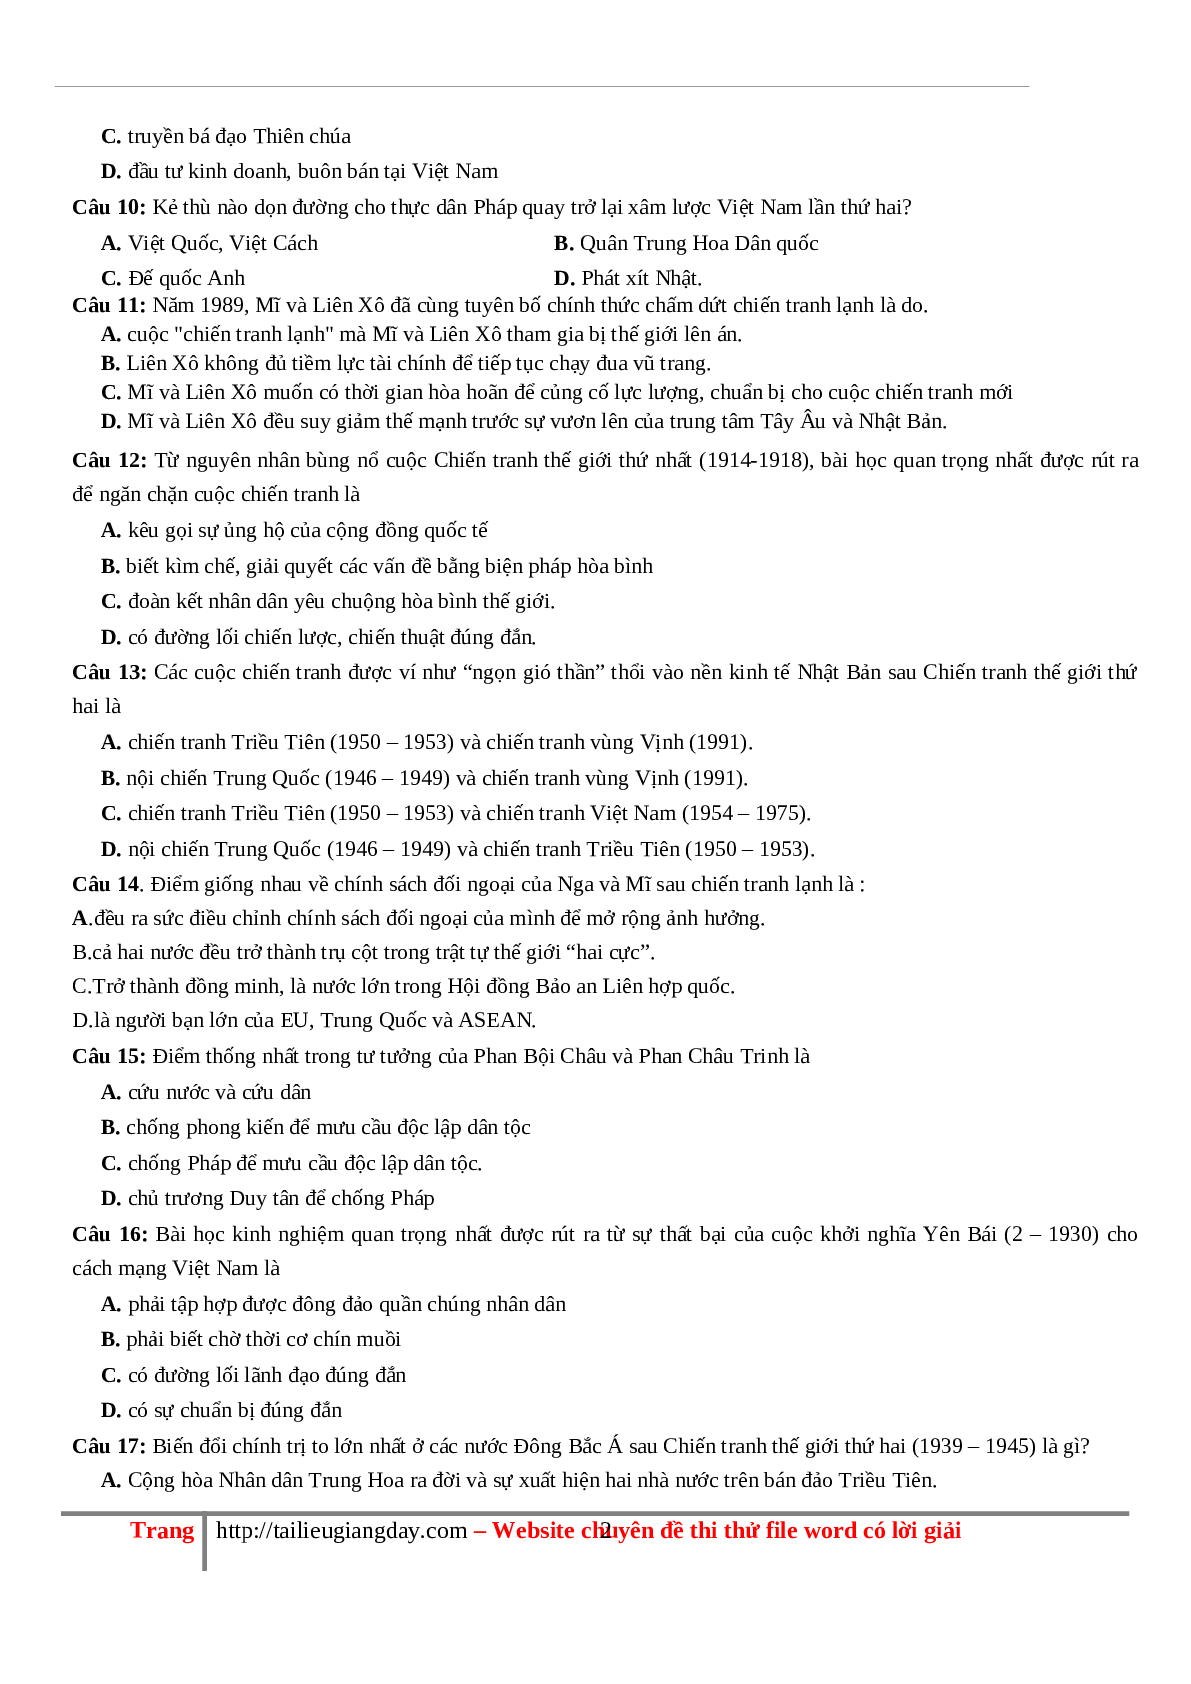 70 câu hỏi ôn tập hay - Lịch Sử 12 (trang 2)